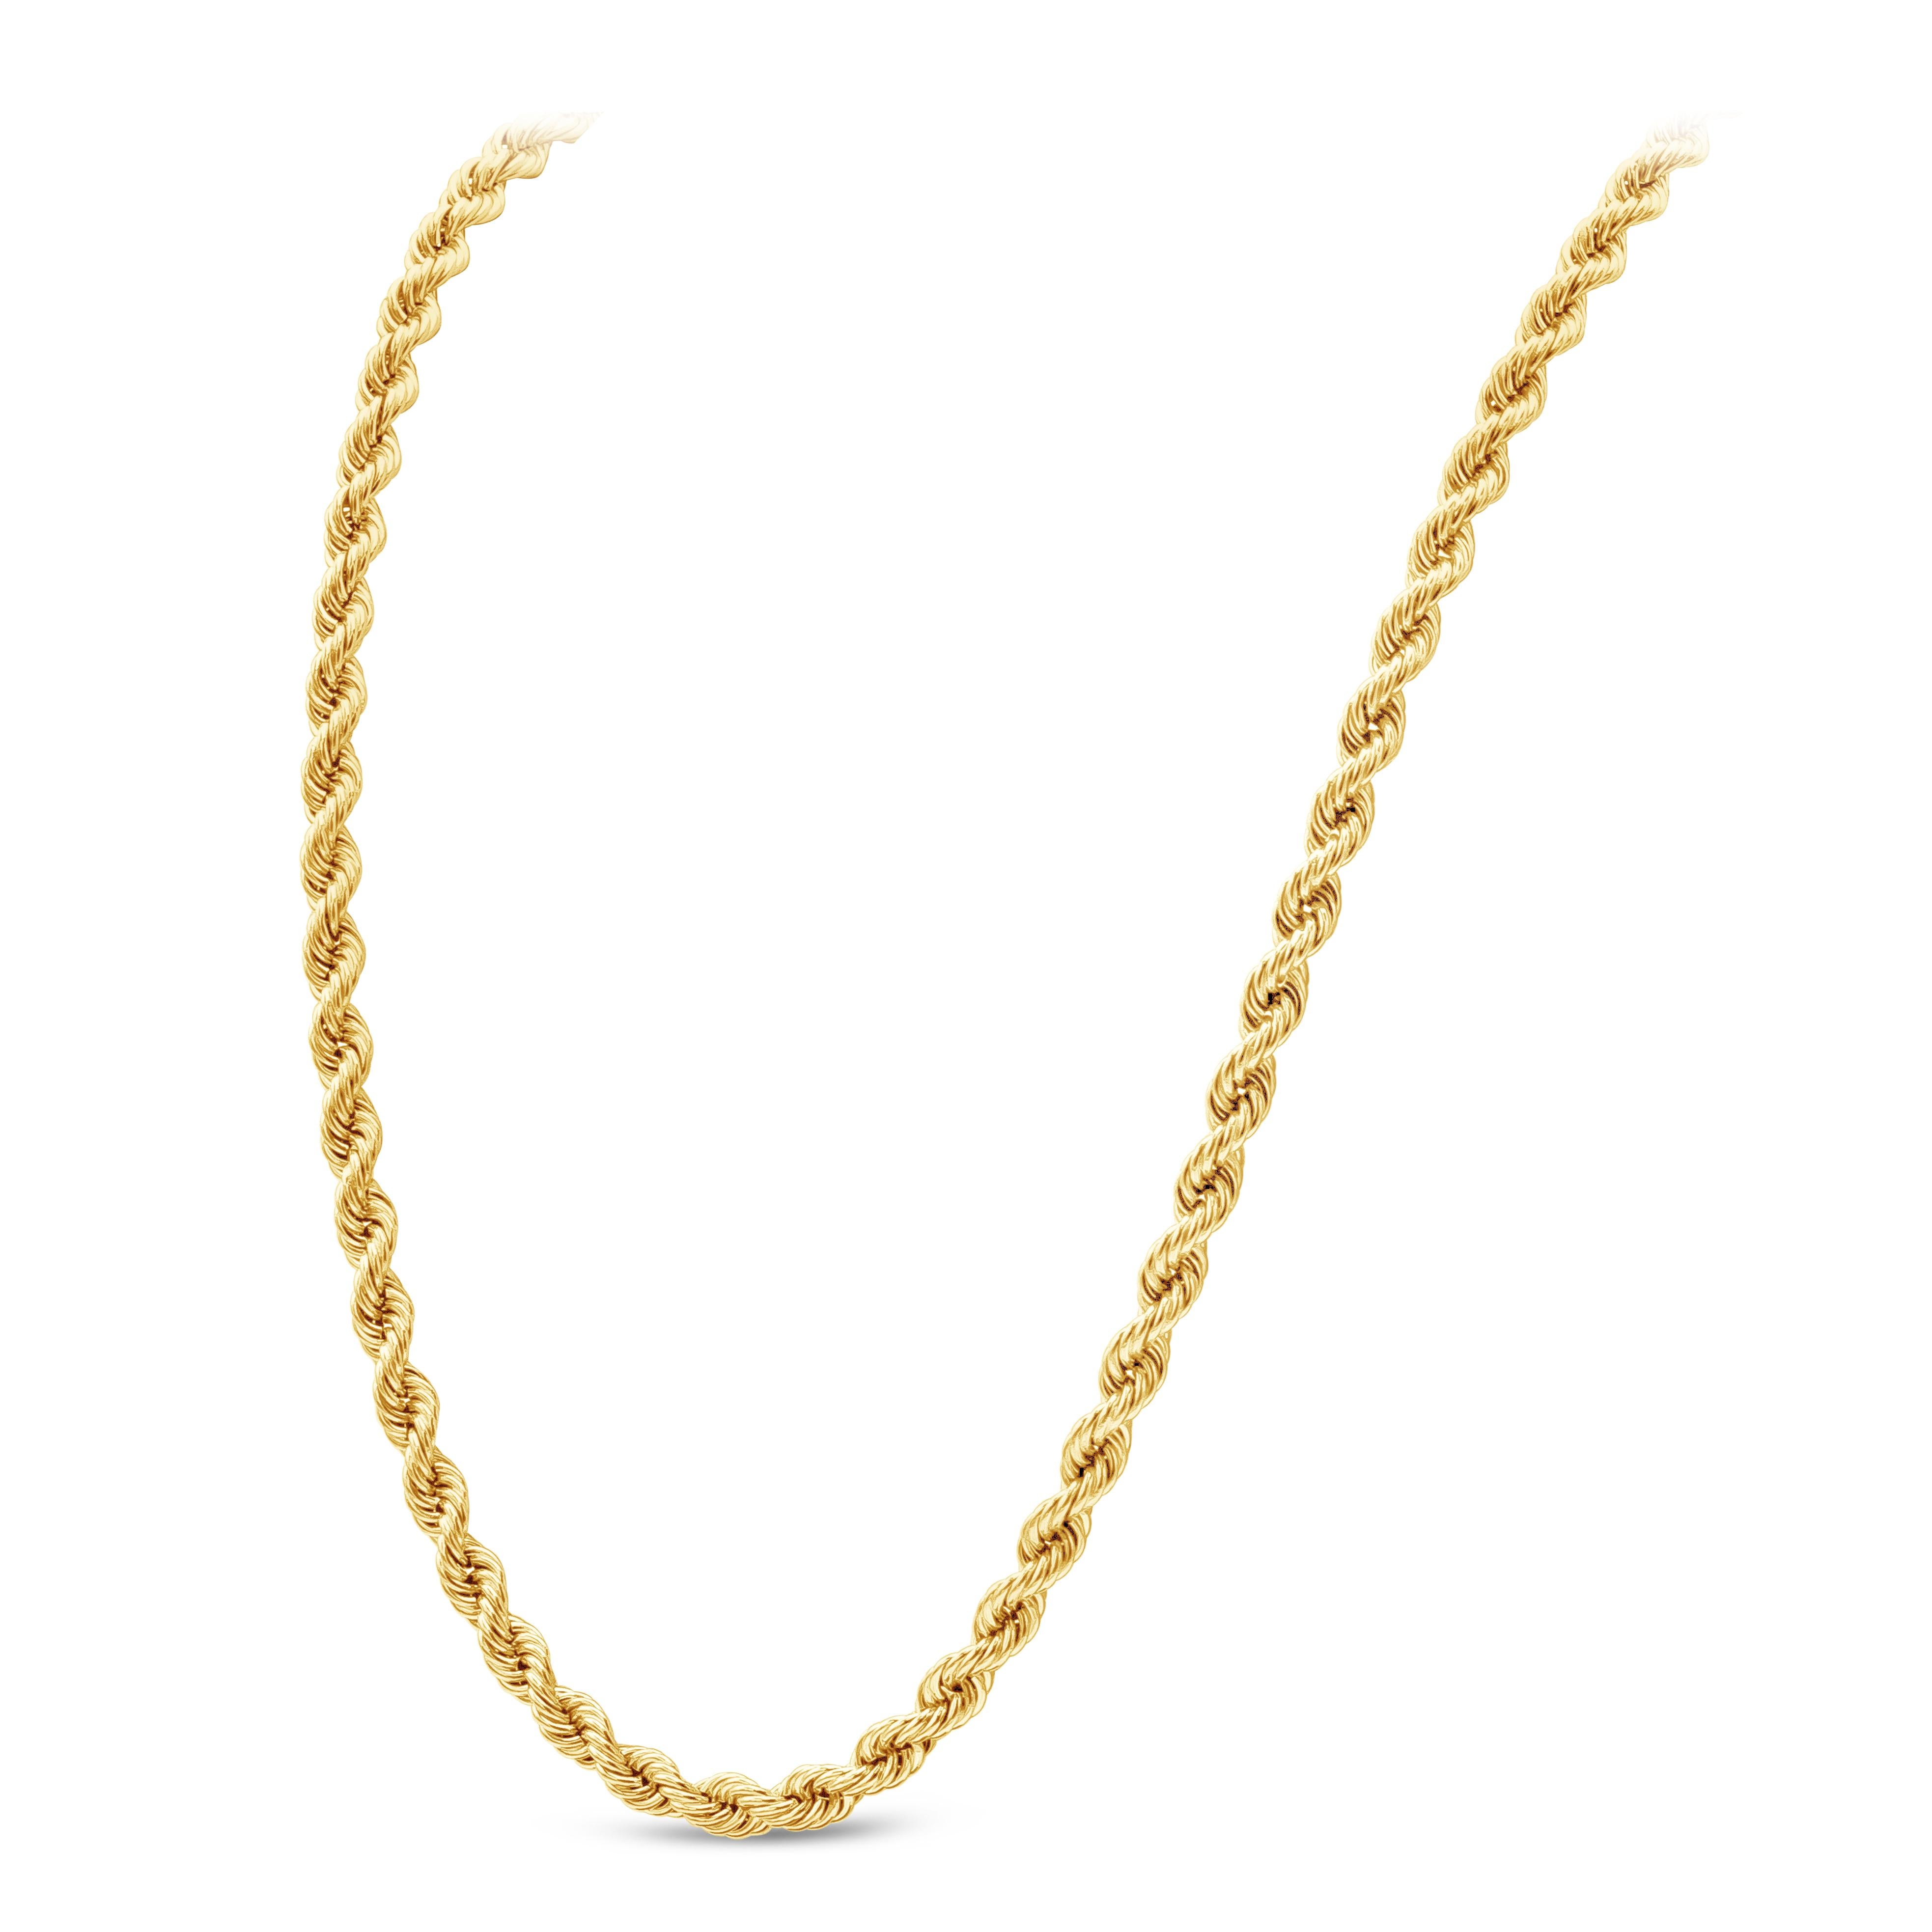 Une chaîne classique en or jaune 14 carats. Conçu dans un style torsadé, ce collier pèse 47 grammes et mesure 30 pouces de long.
